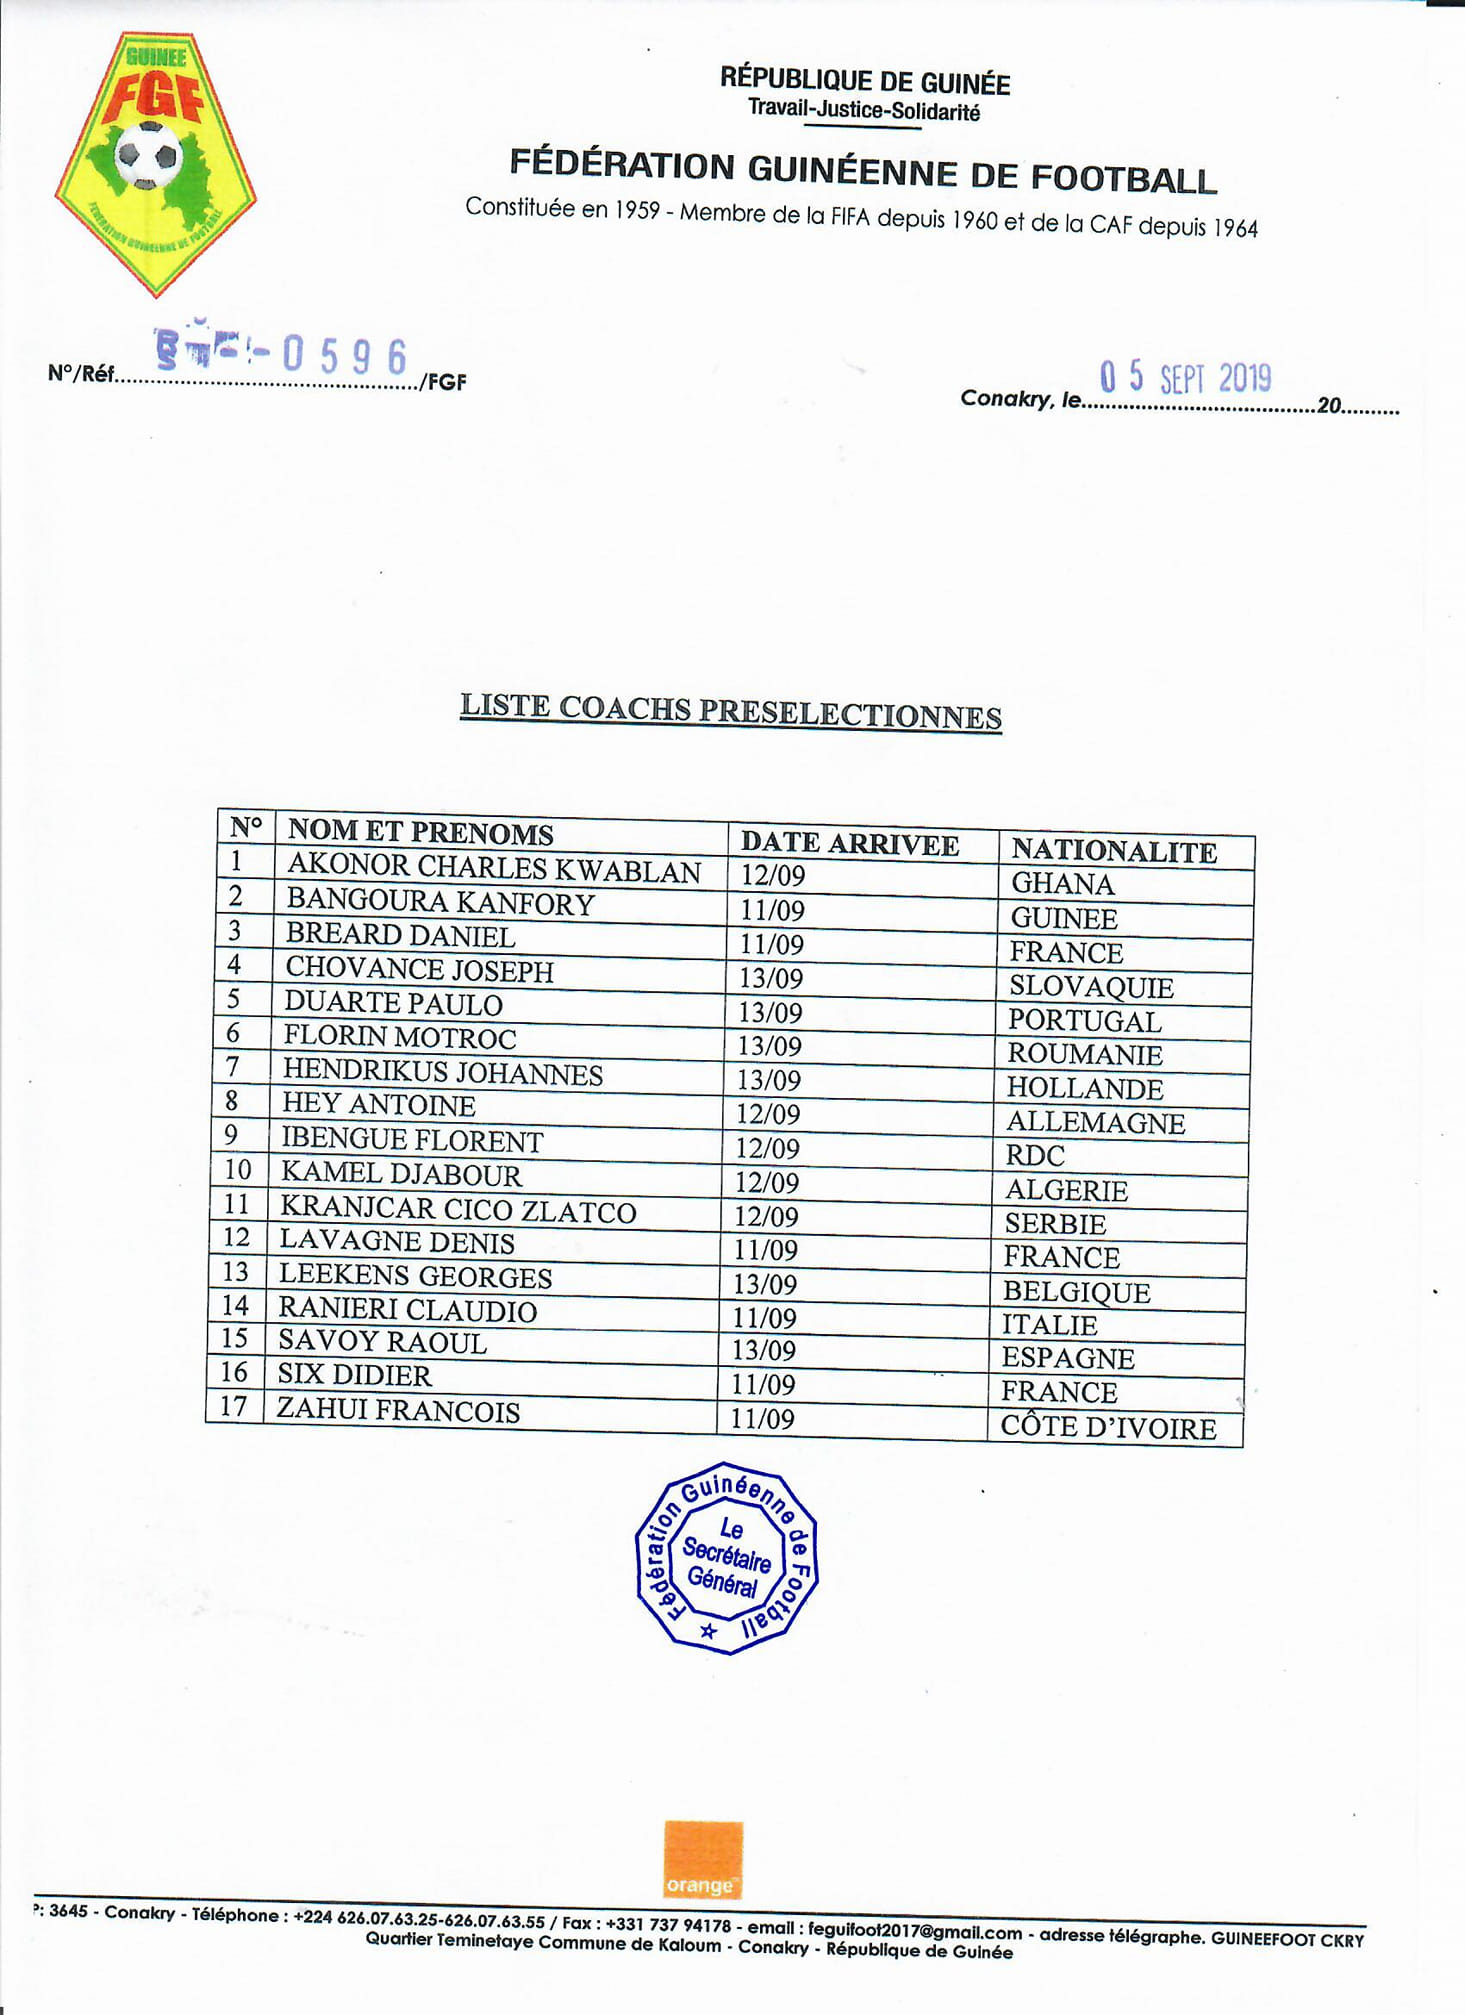 Candidats présélectionnés pour occuper le poste de sélectionneur de la Guinée